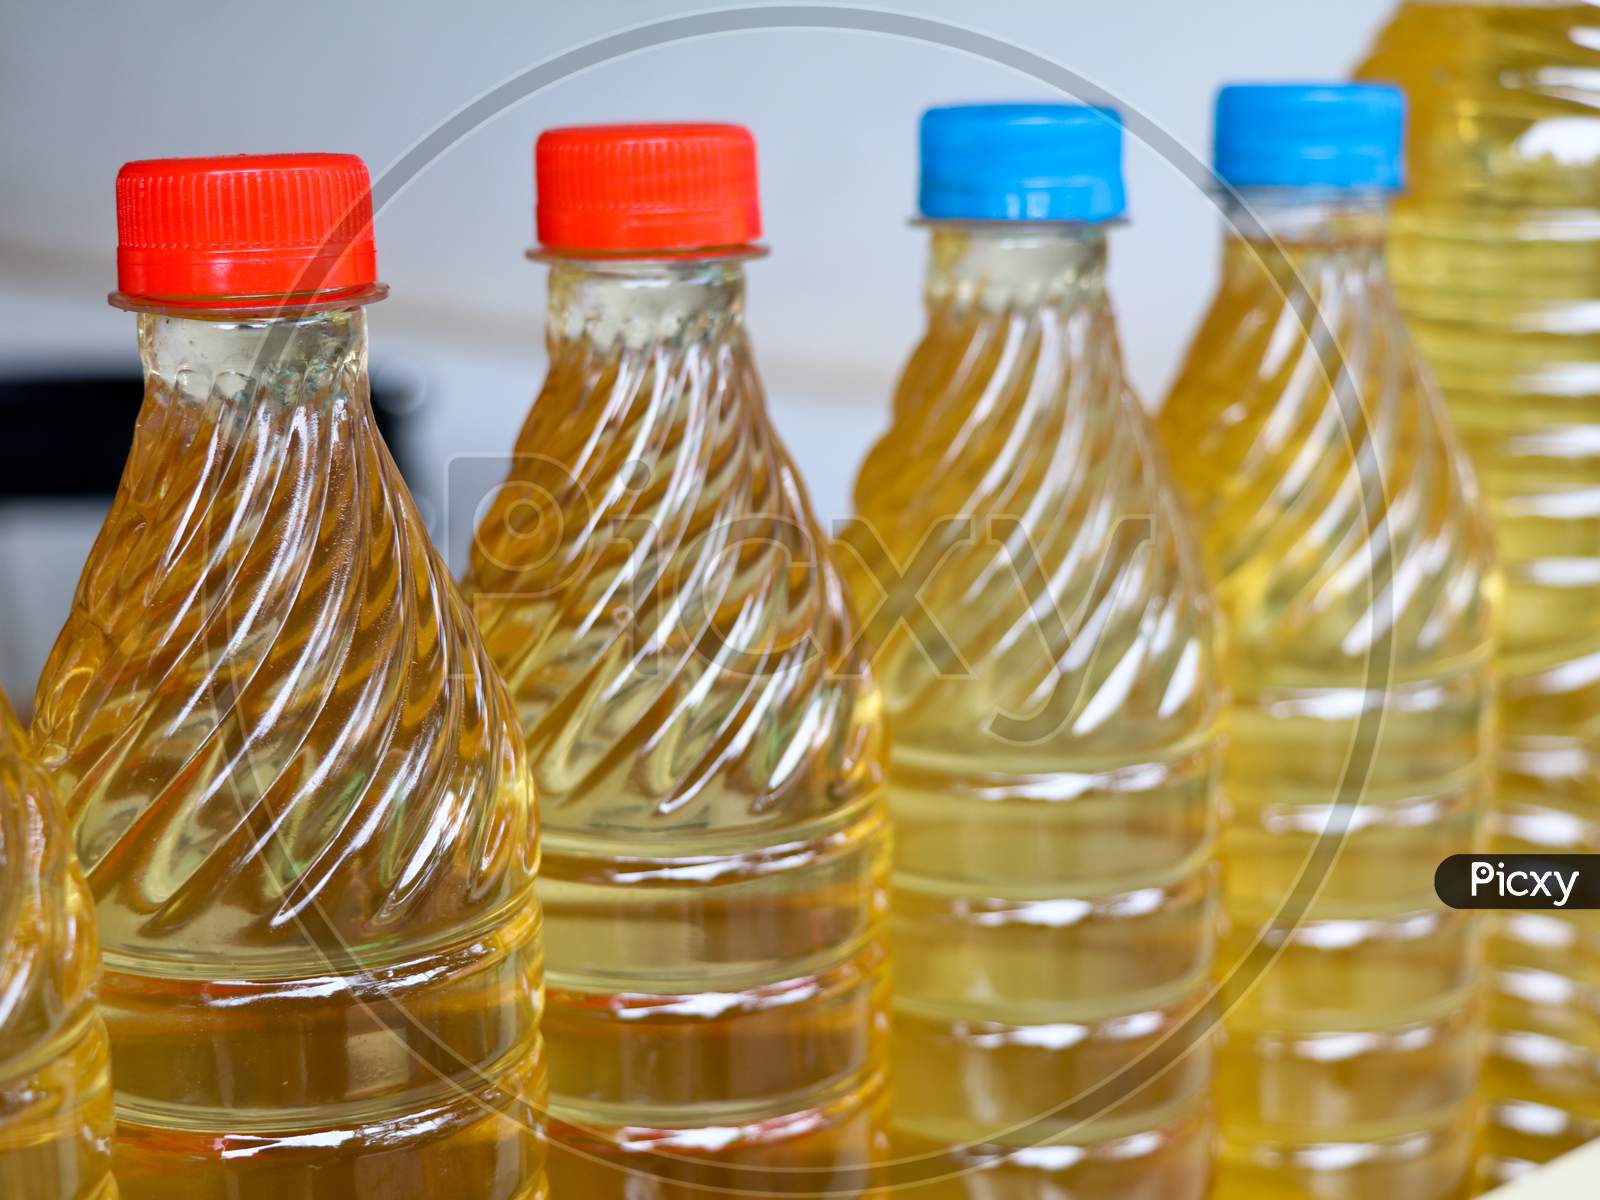 Fresh coconut oil in bottles for sale